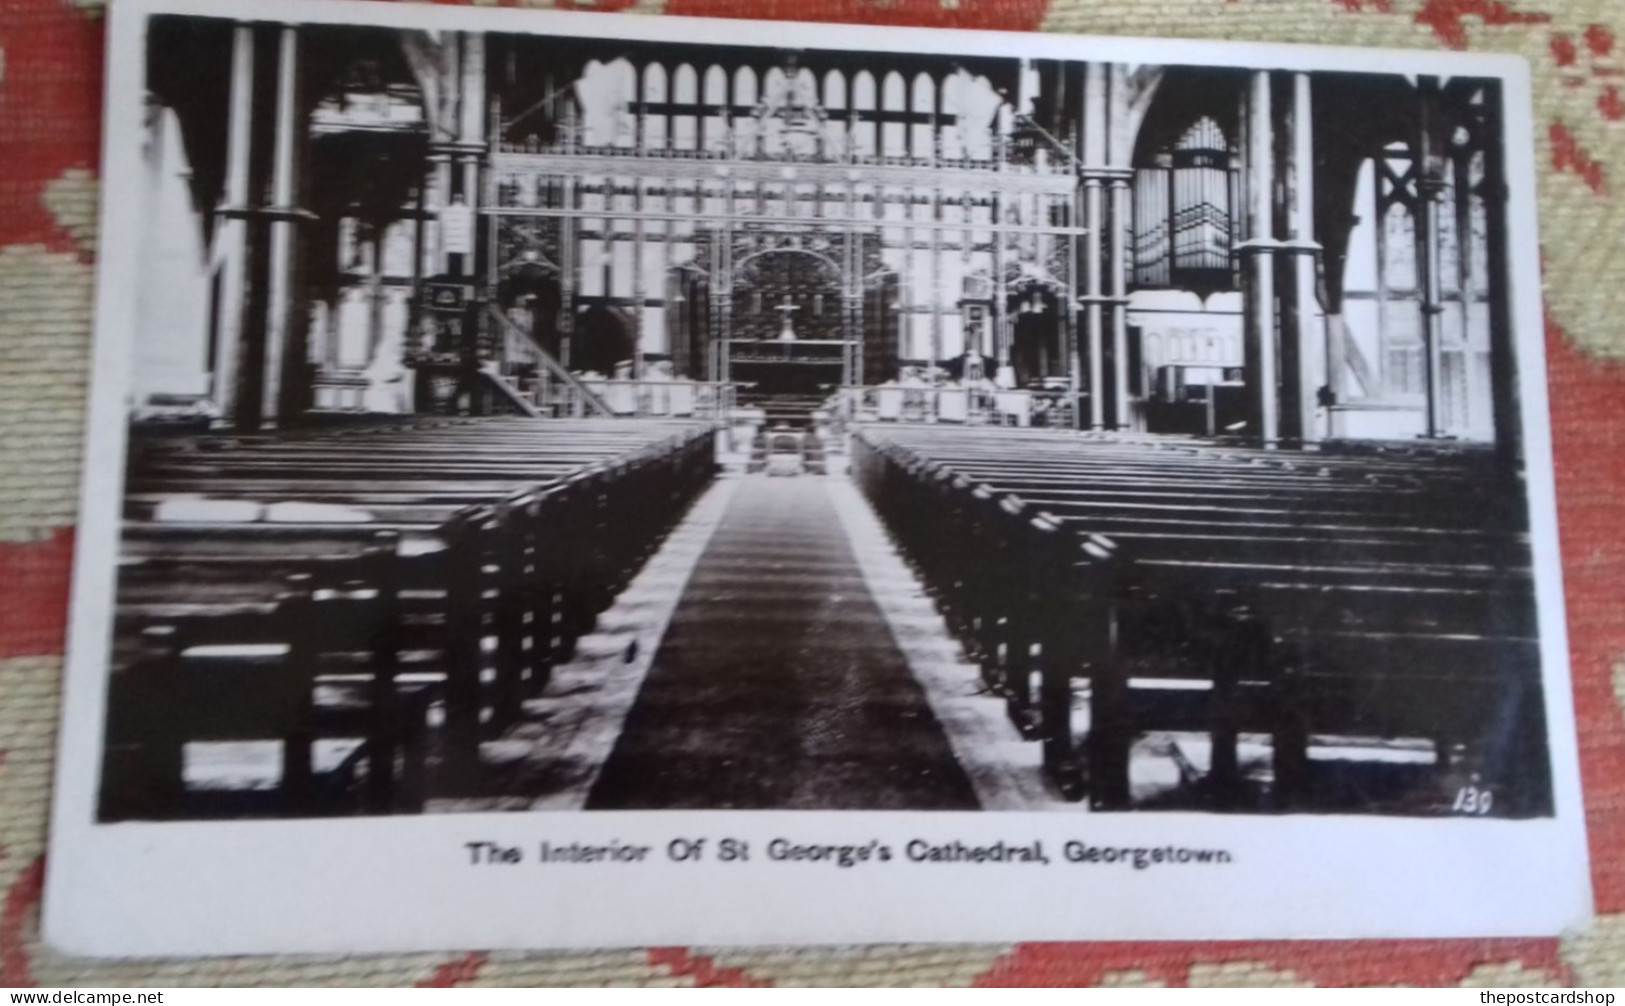 British Guiana Guyana Demerara GEORGETOWN St. George's Cathedral INTERIOR UNUSED - Guyana (formerly British Guyana)